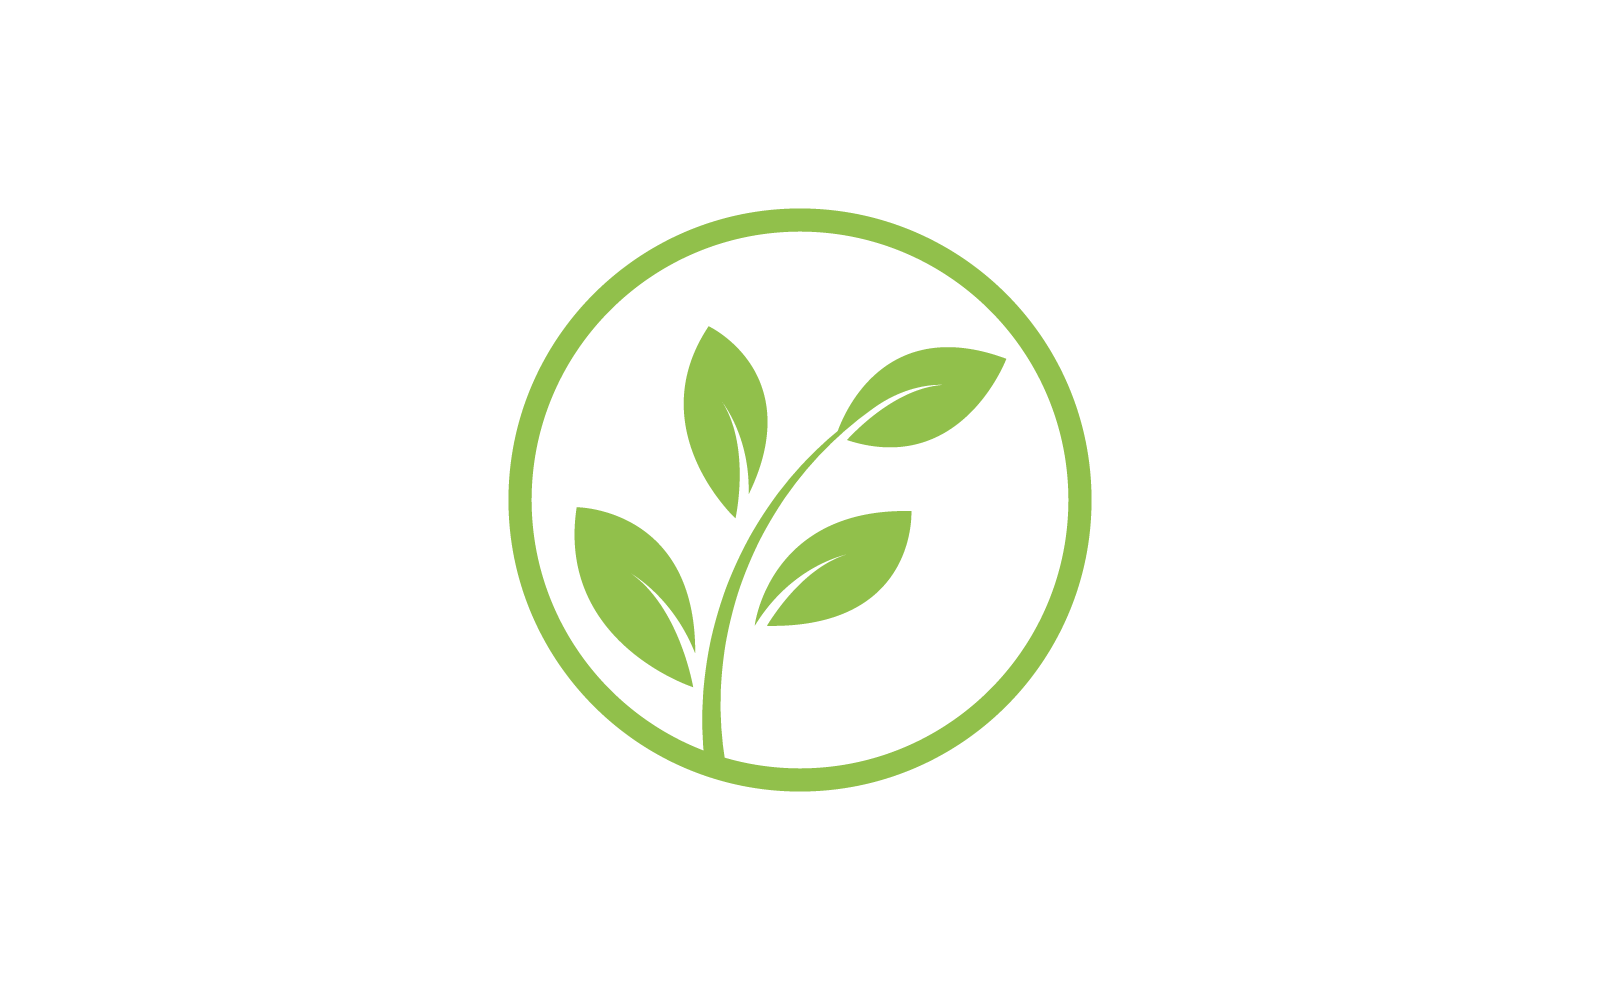 Green leaf design illustration vector template